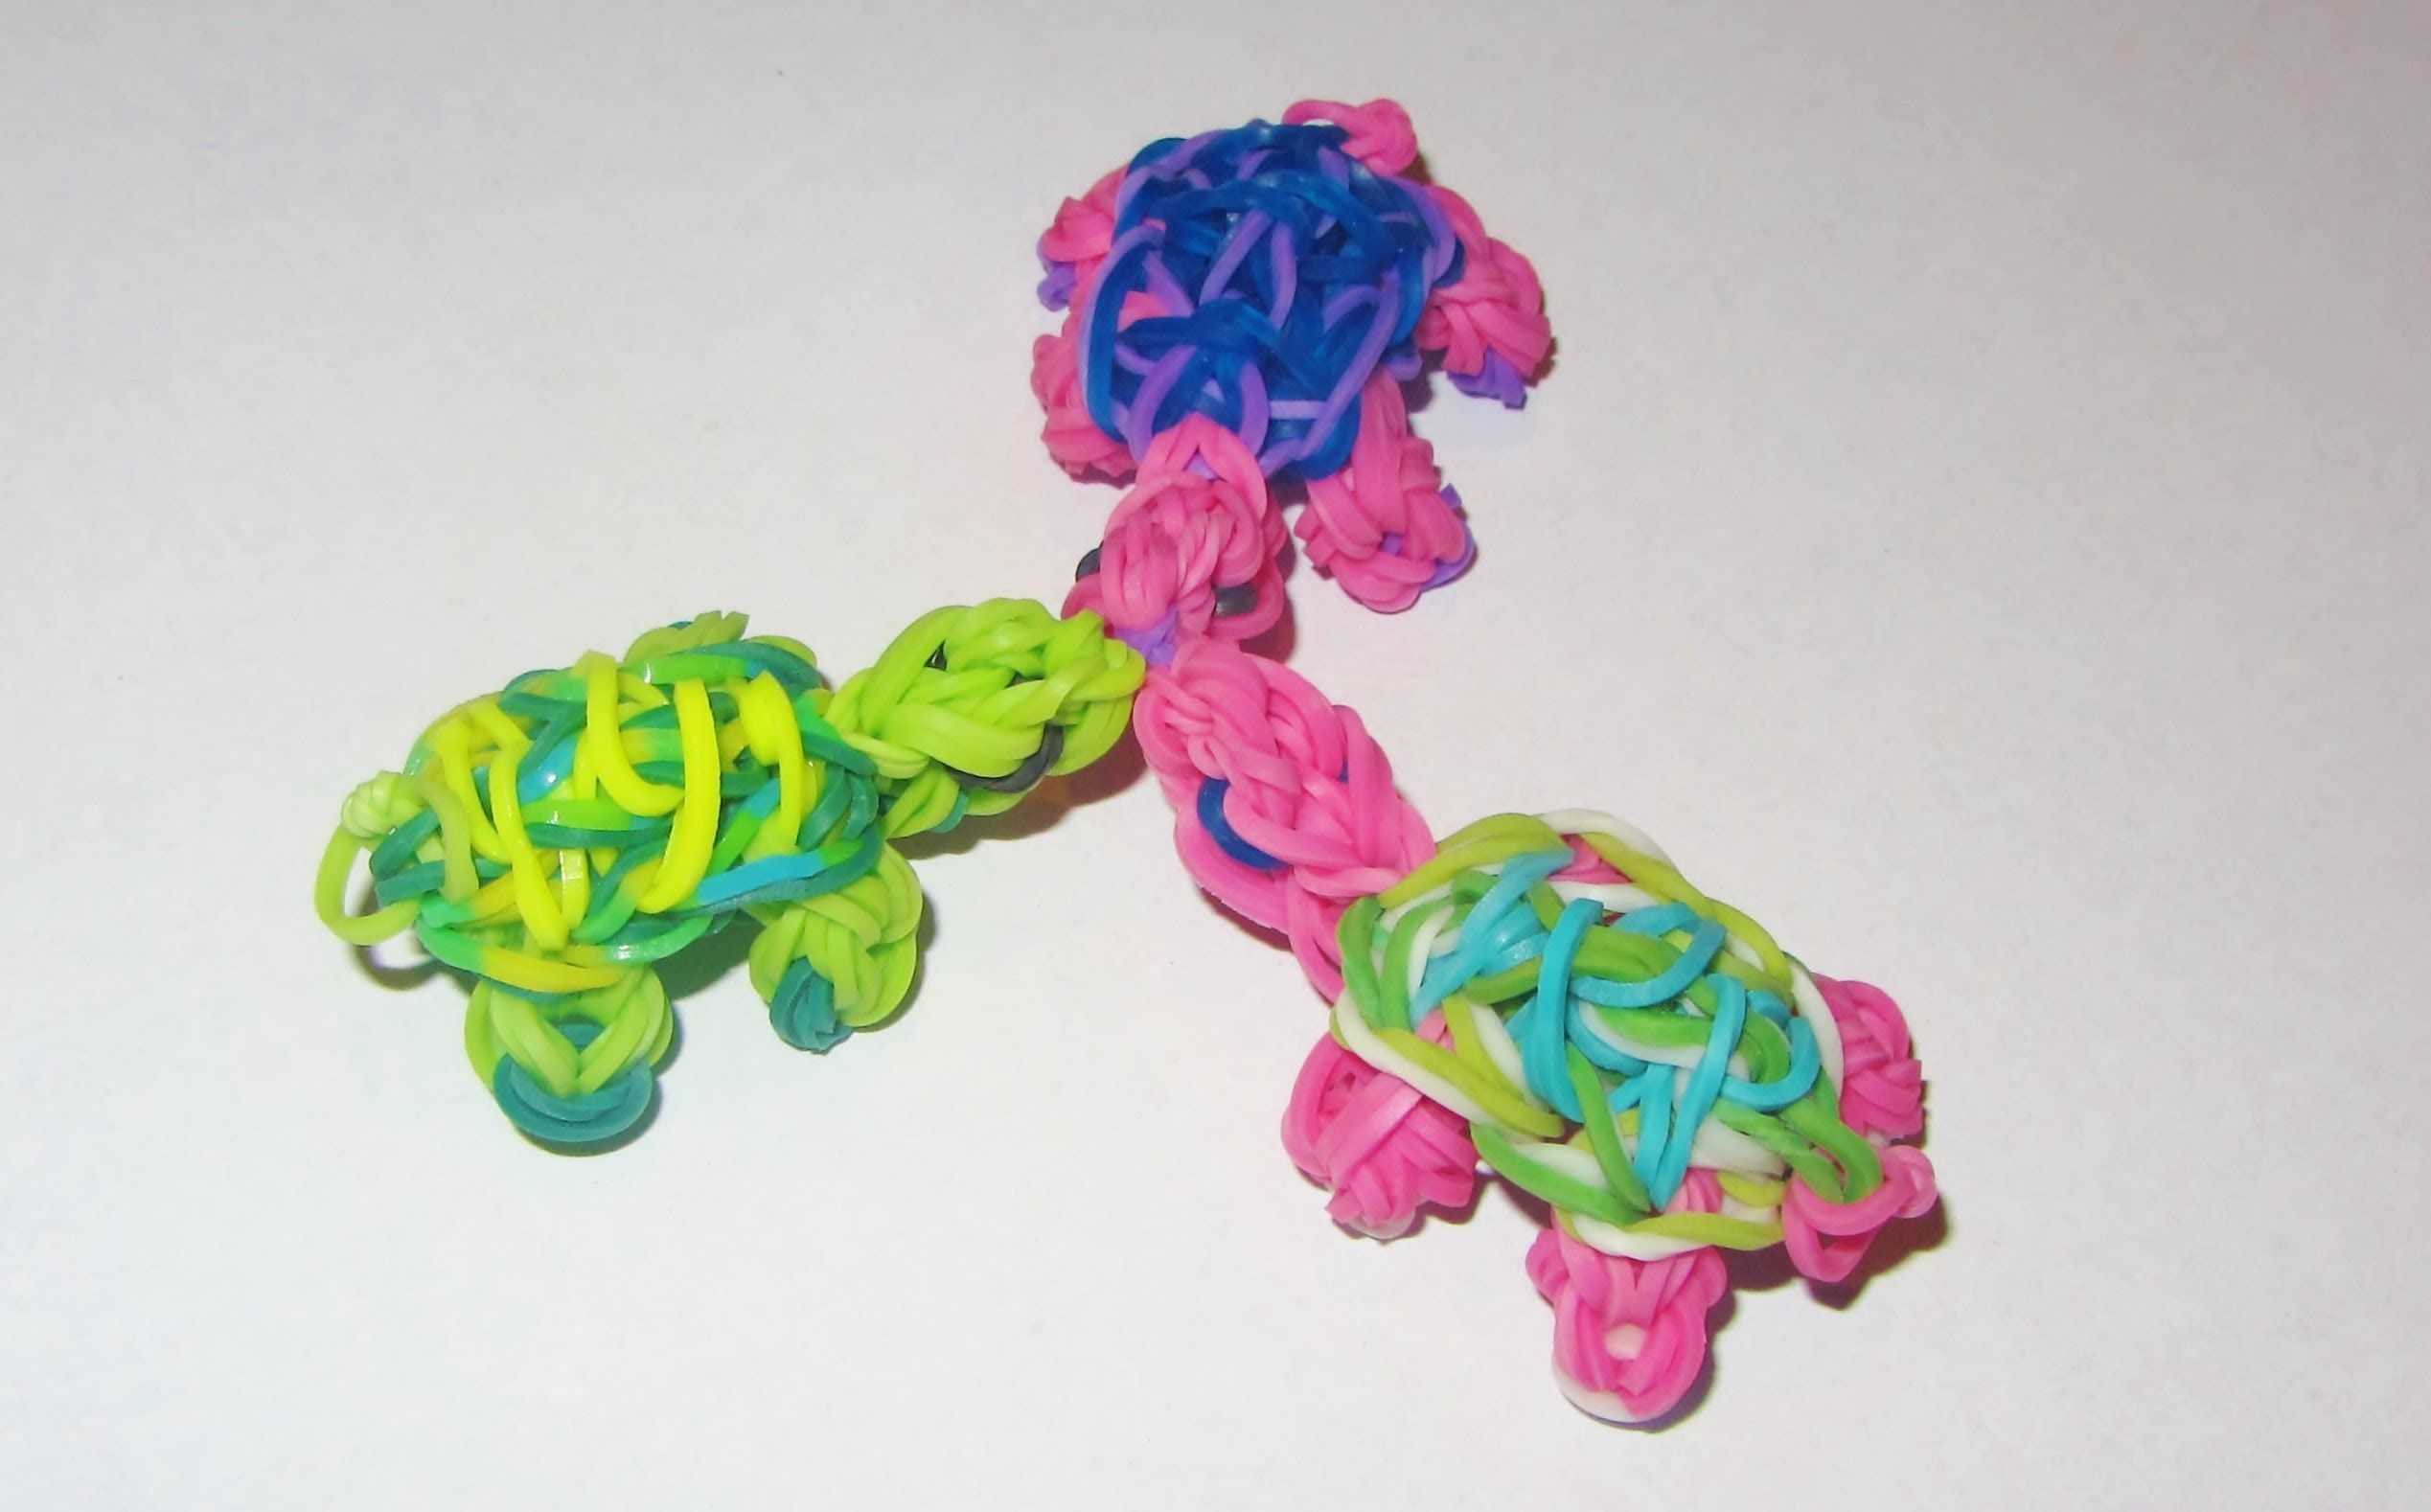 Как сплести из цветных резинок 🤡 фигурки 3d, уроки плетения на станке, рогатке и крючке